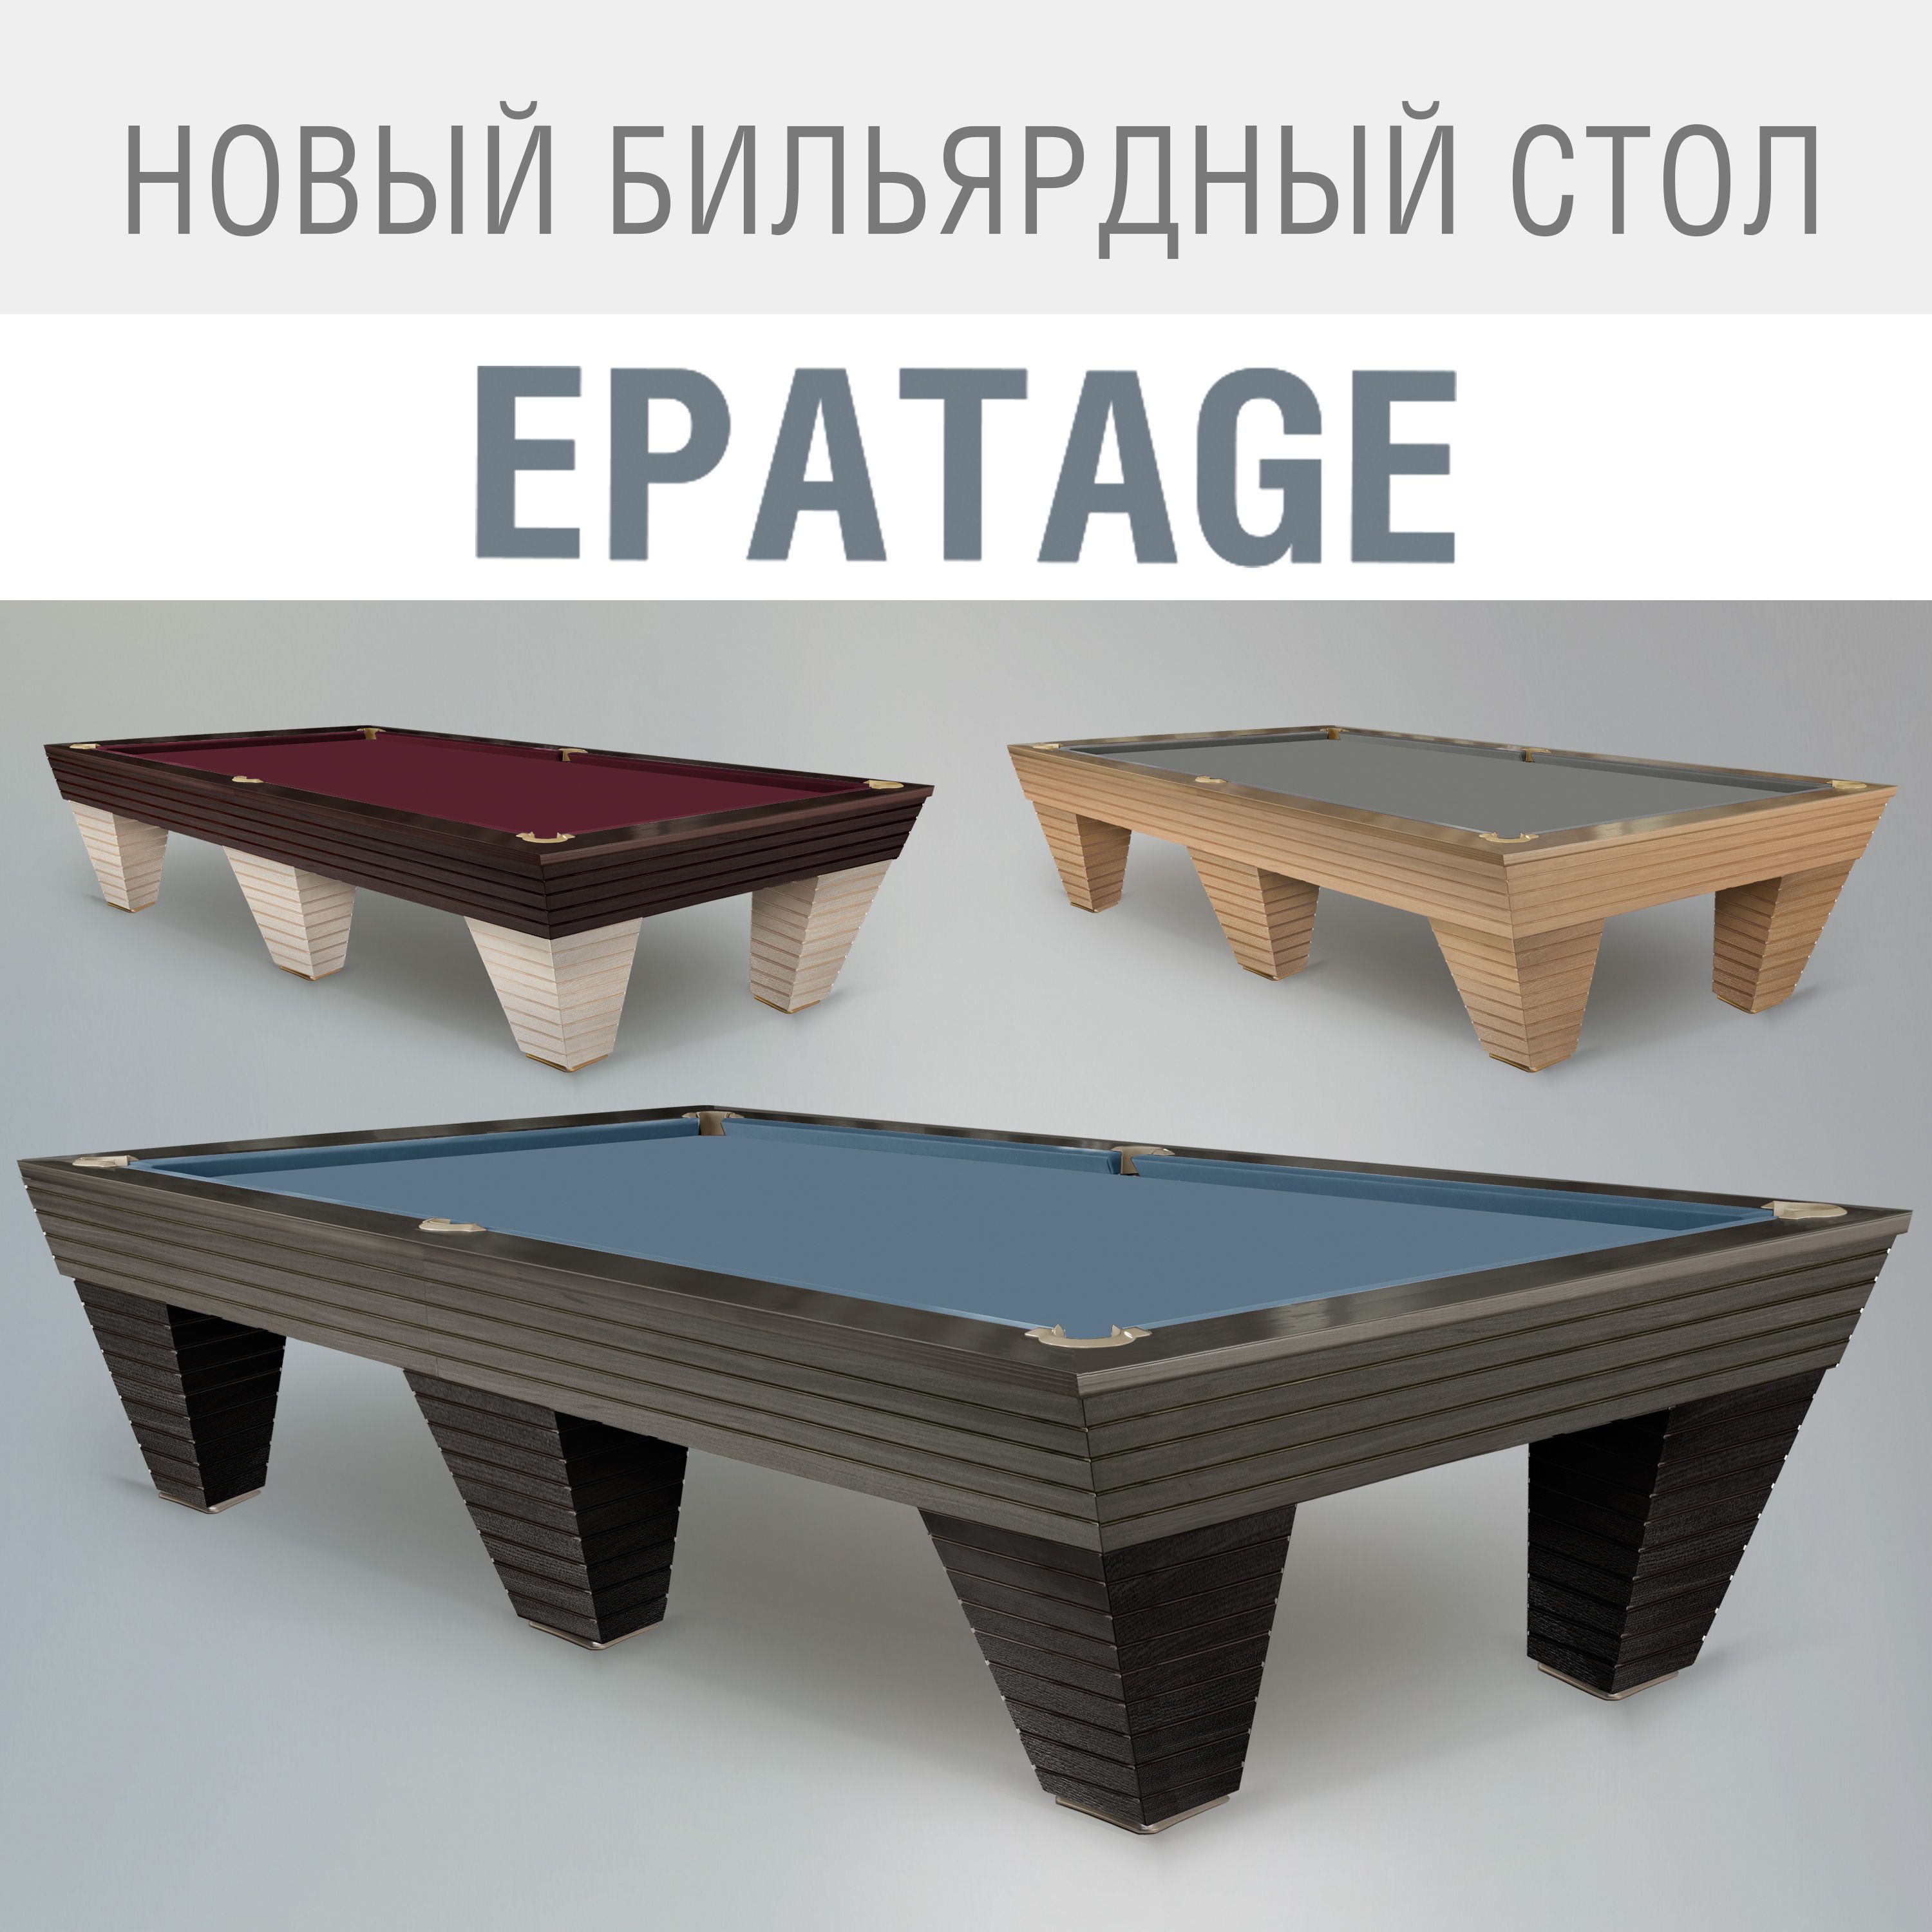 Новый профессиональный бильярдный стол Epatage — образец престижа и элегантности!